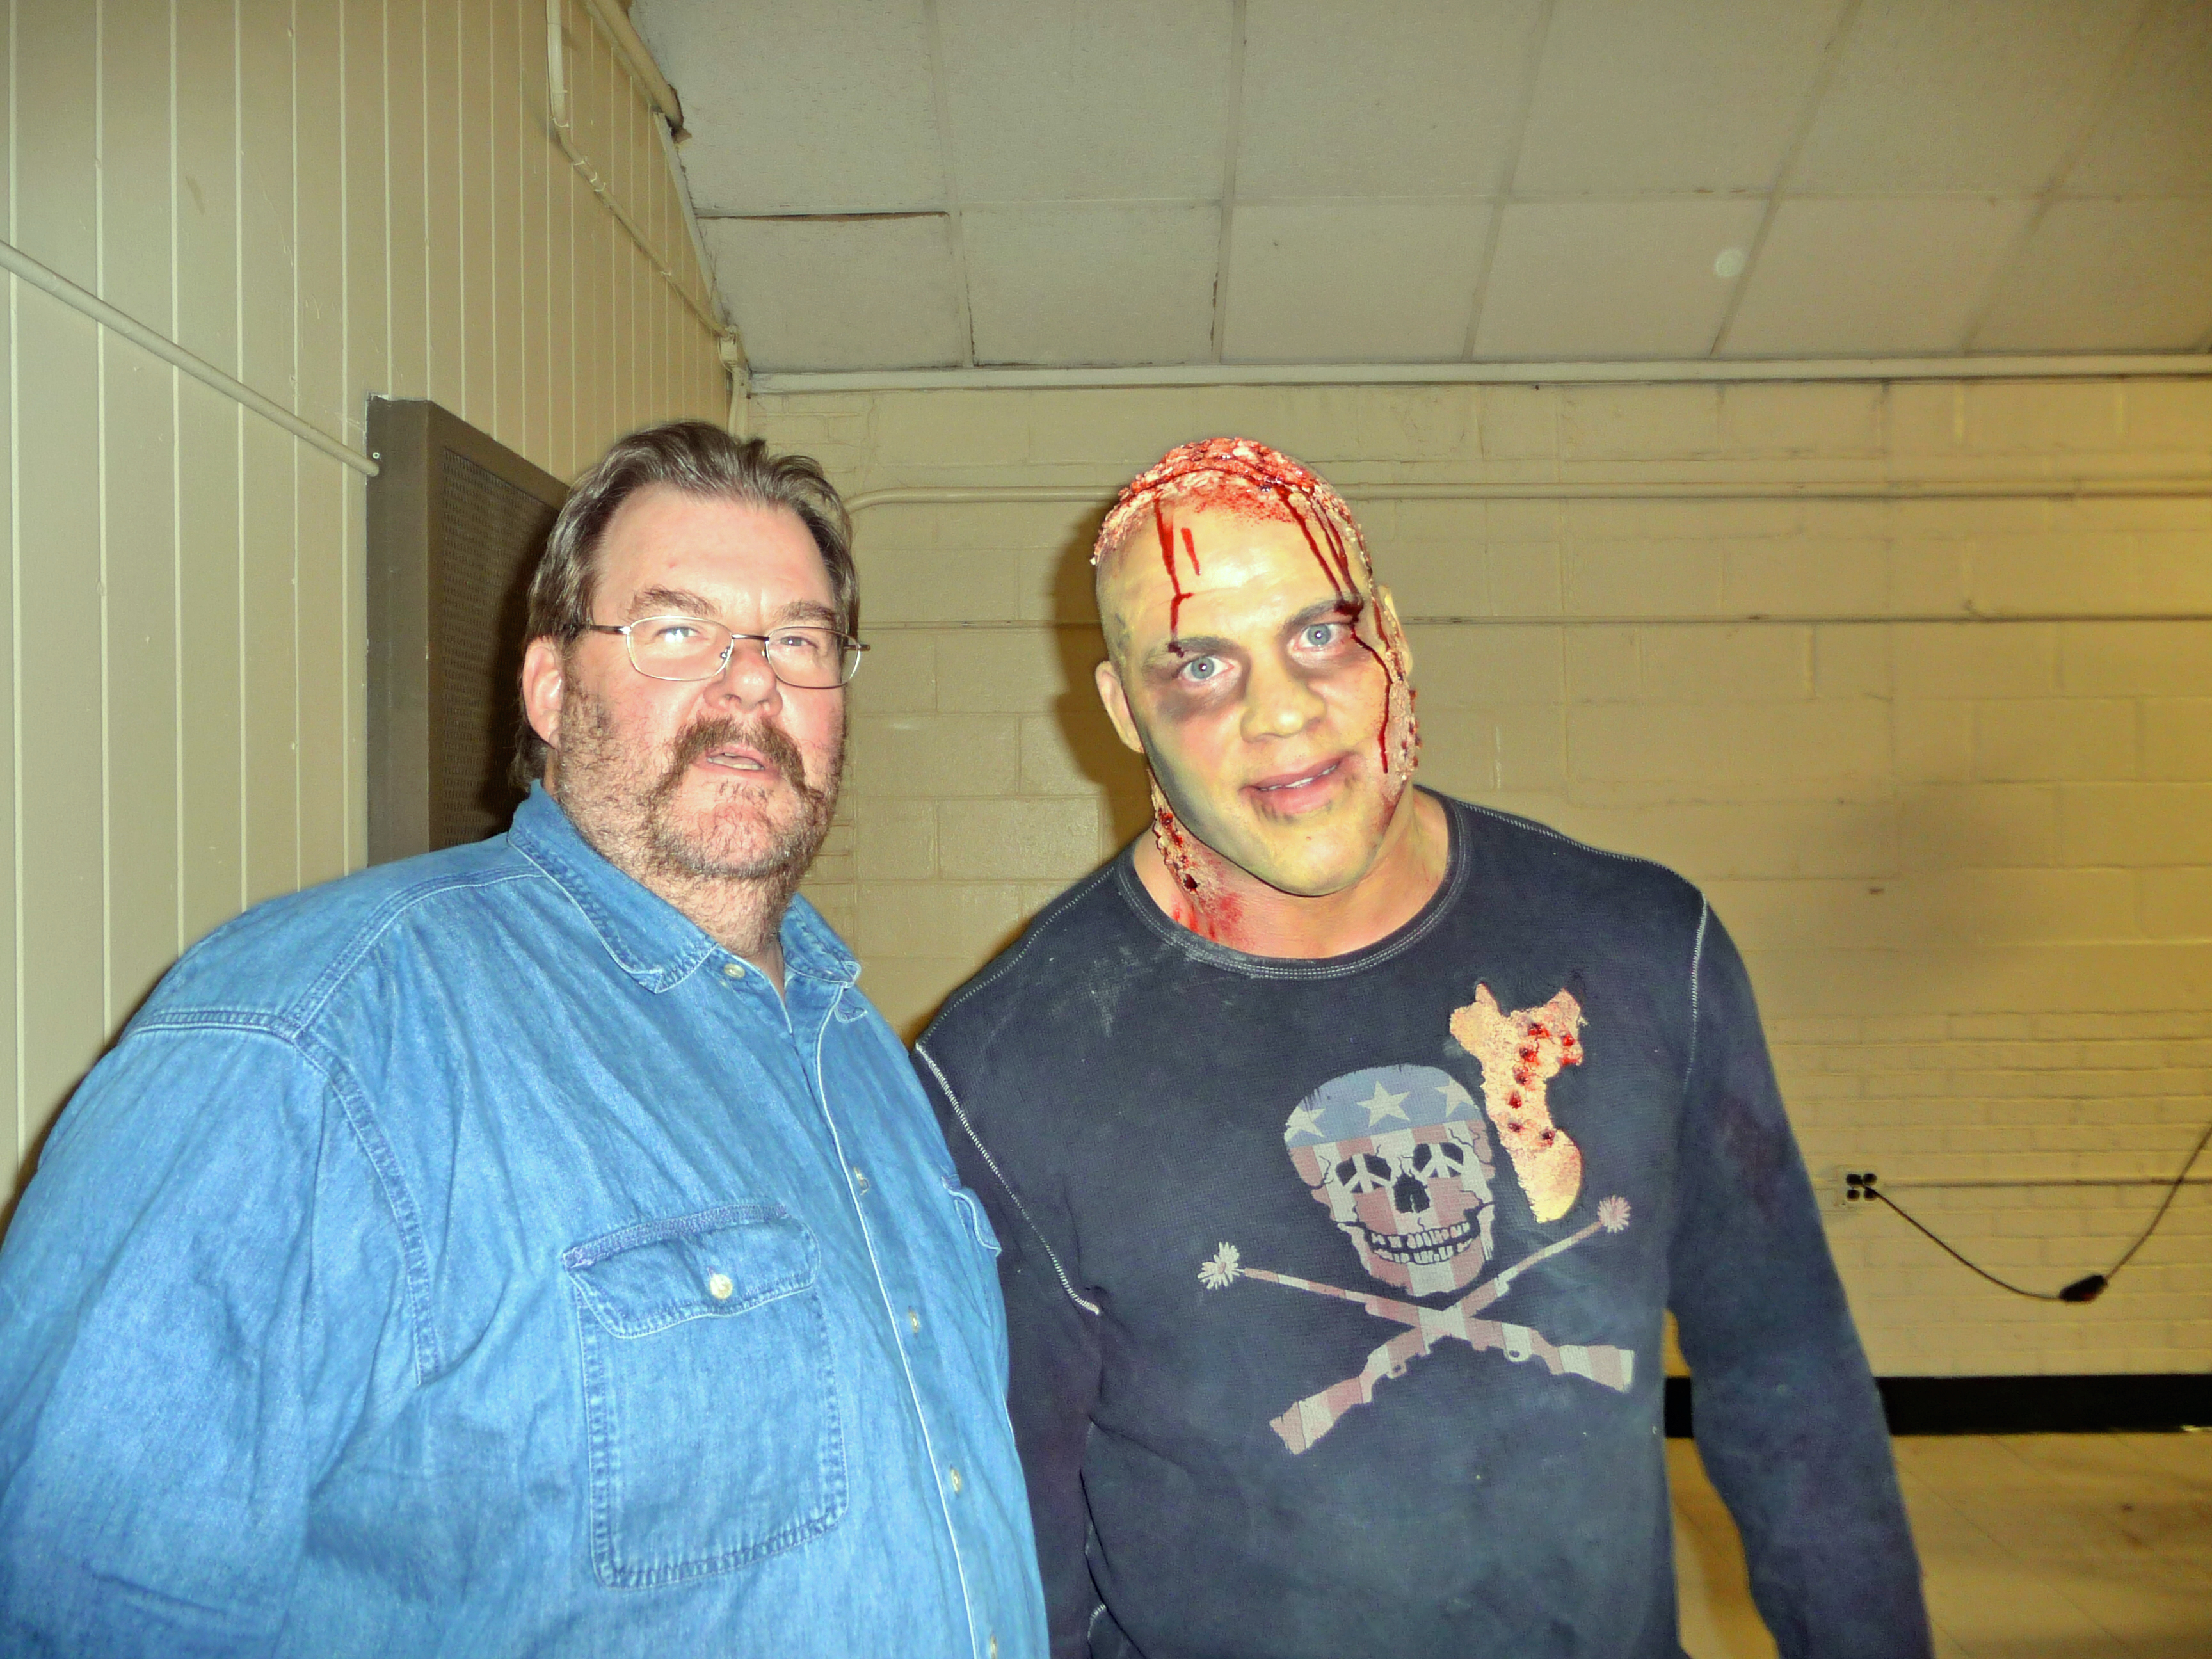 Pro Wrestlers vs Zombies - Ed Pfeifer & Kurt Angle